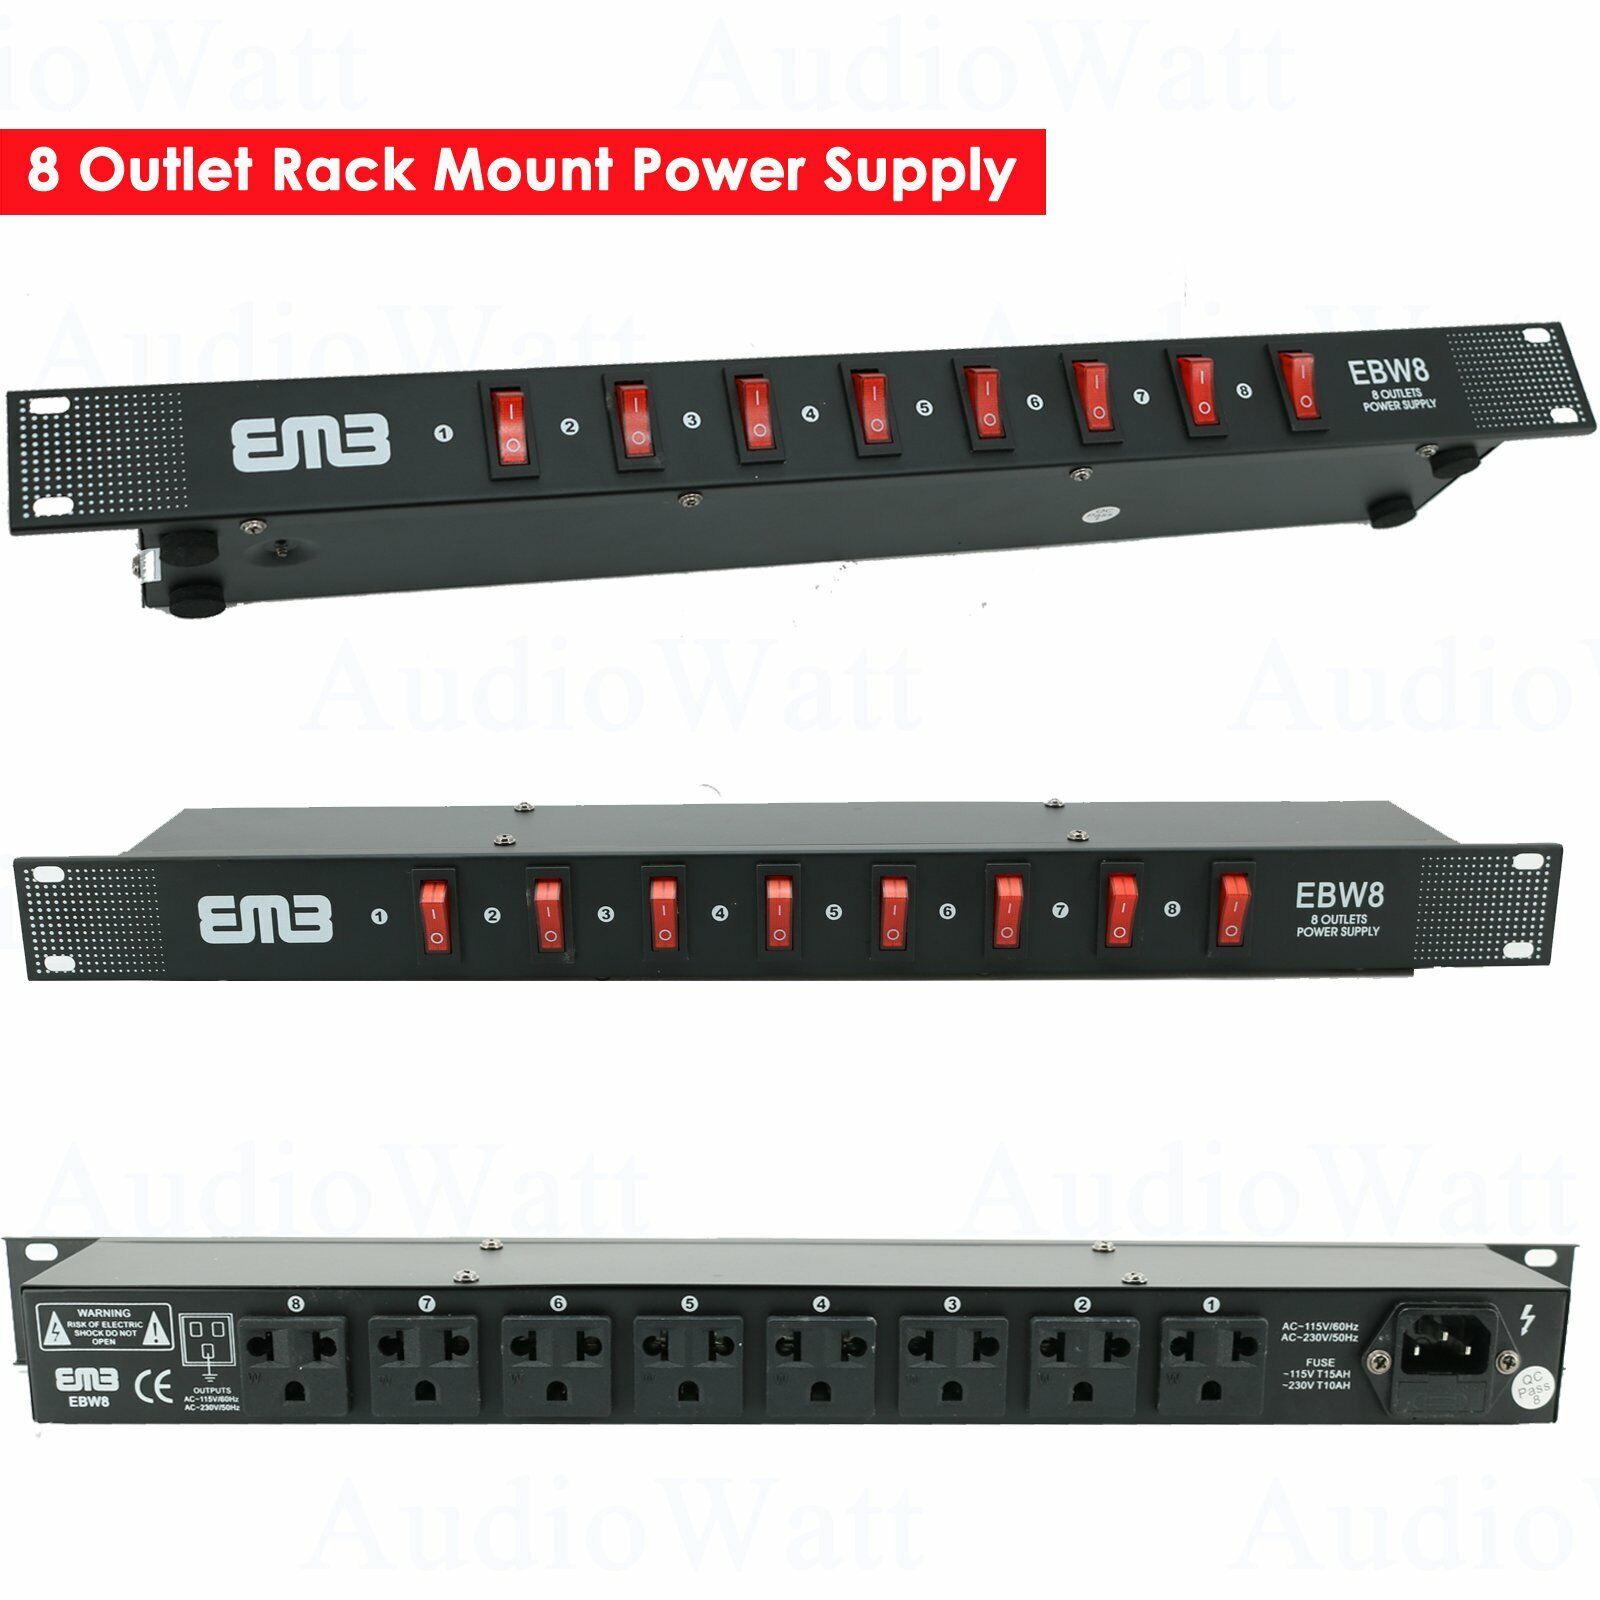 EMB EBW8 8 Outlet Rack Mount Power Supply AC 110V/220V Outlet Surge Protector